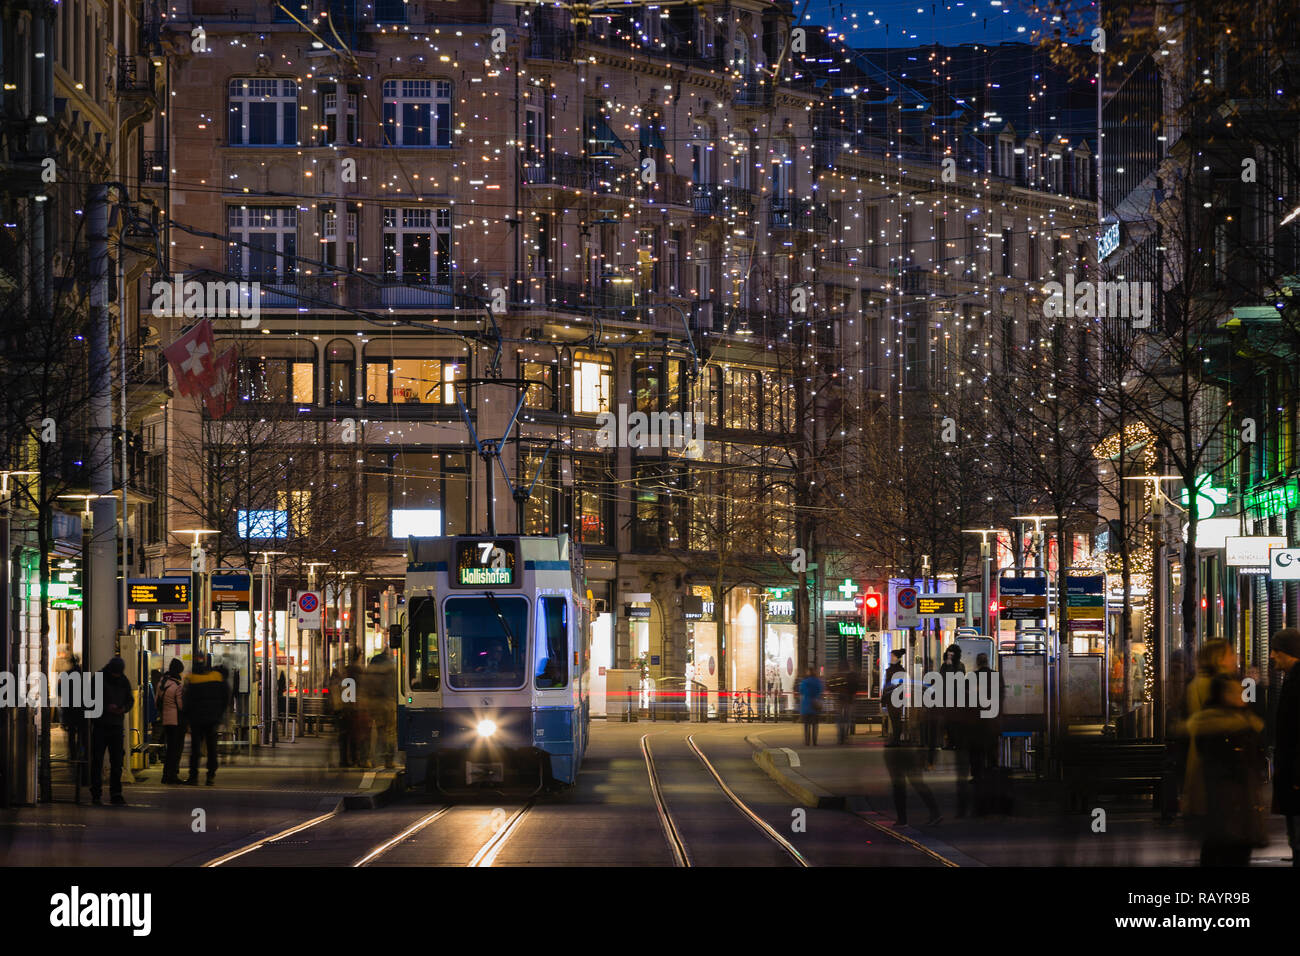 Weihnachtsbeleuchtung an der Bahnhofstrasse, Zürich, Schweiz Stockfoto